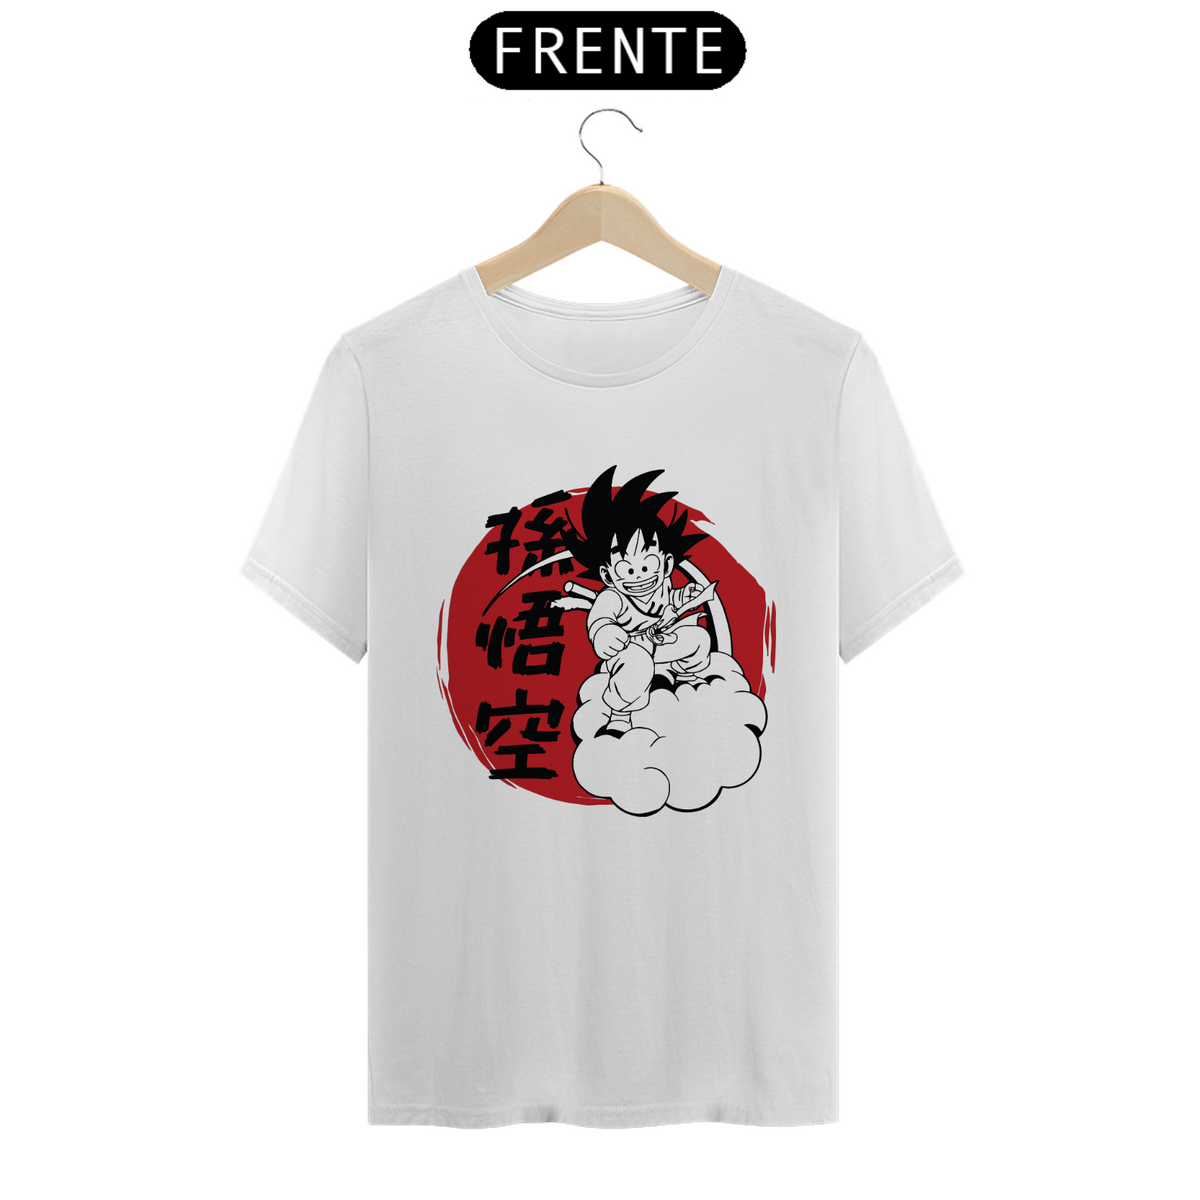 Nome do produto: T-shirt - Kid Goku